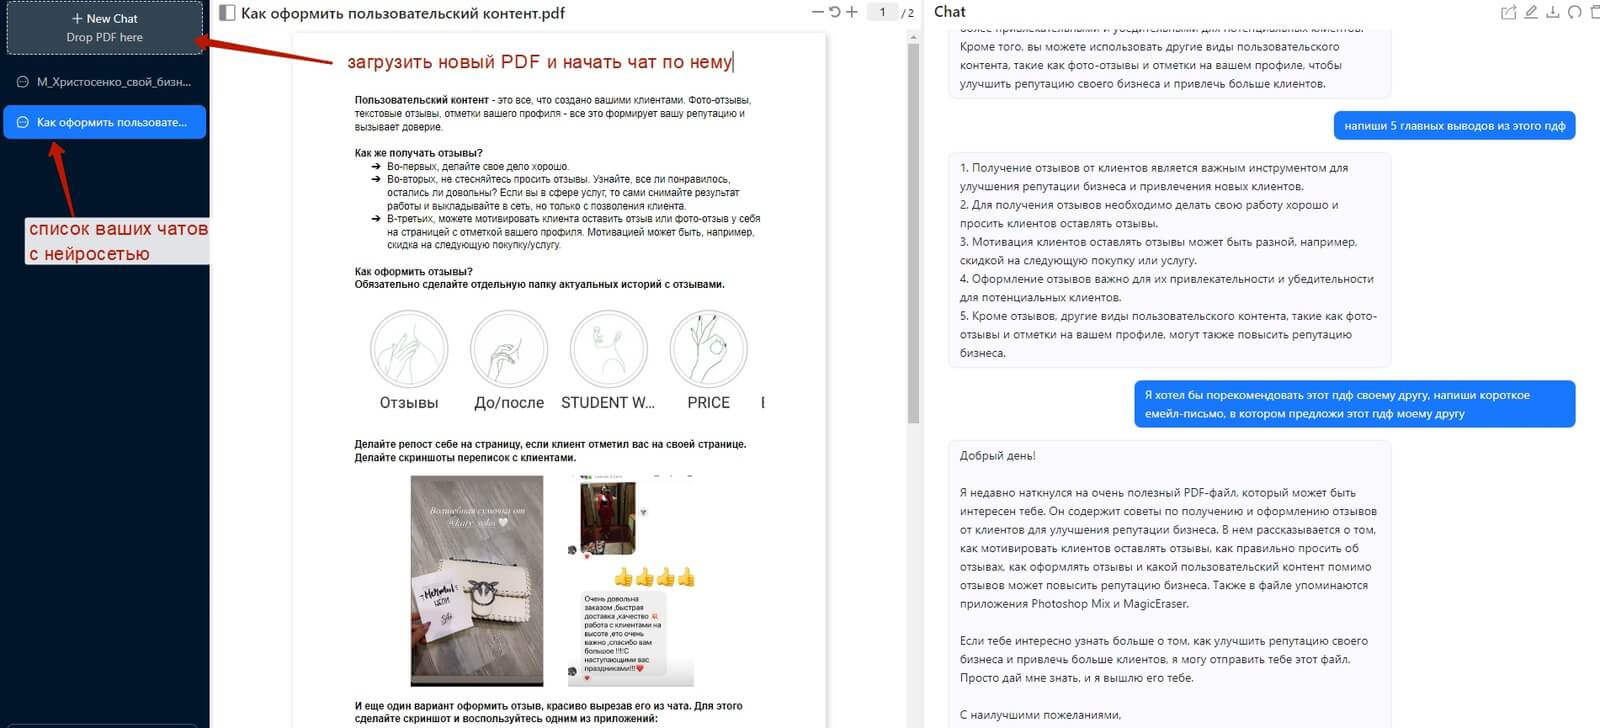 Как пользоваться нейросетью Chat PDF? Видеоурок с обзором